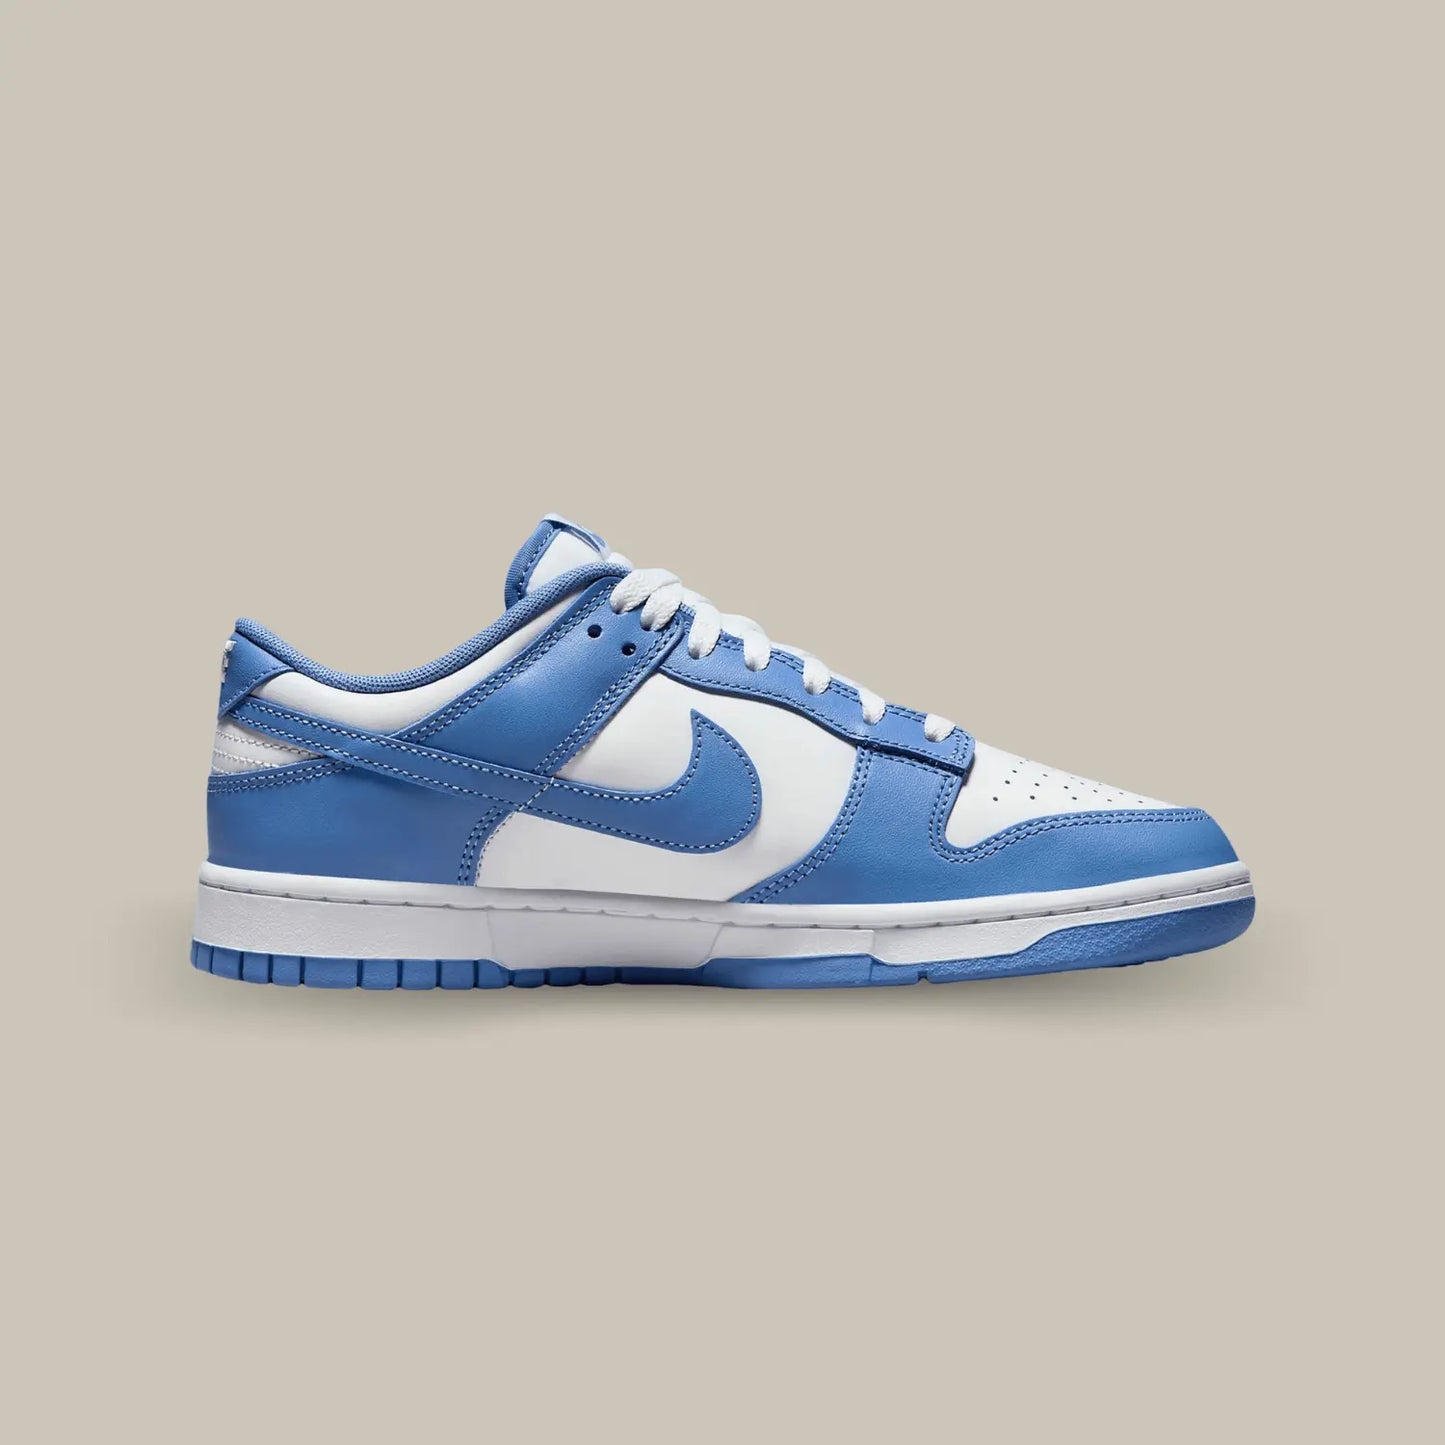 La Nike Dunk Low Polar Blue vue de coté de couleur bleu ciel et blanc.